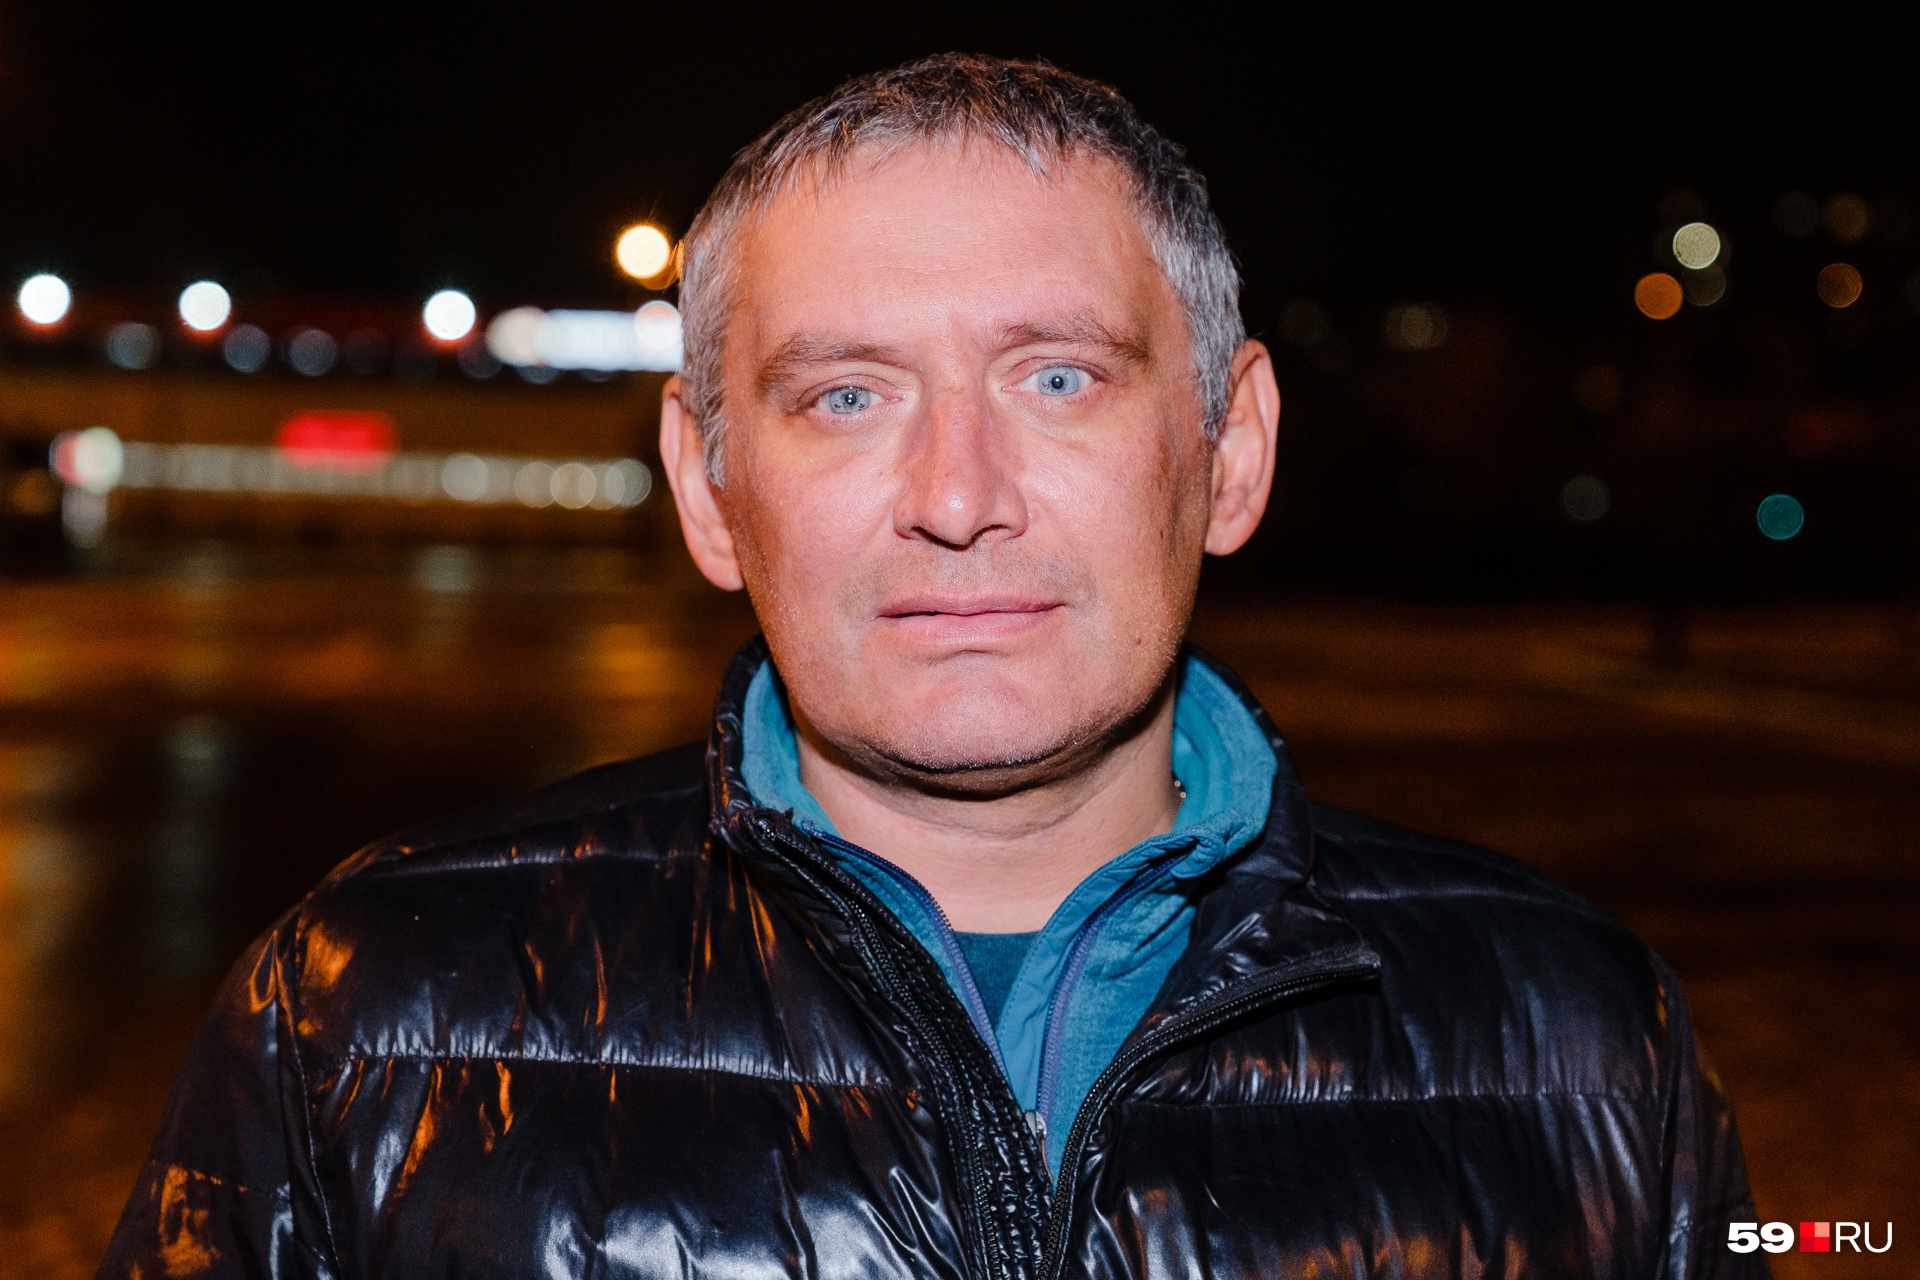 Денис Кольцов в 2009 году был начальником дежурной смены службы пожаротушения в главном управлении МЧС